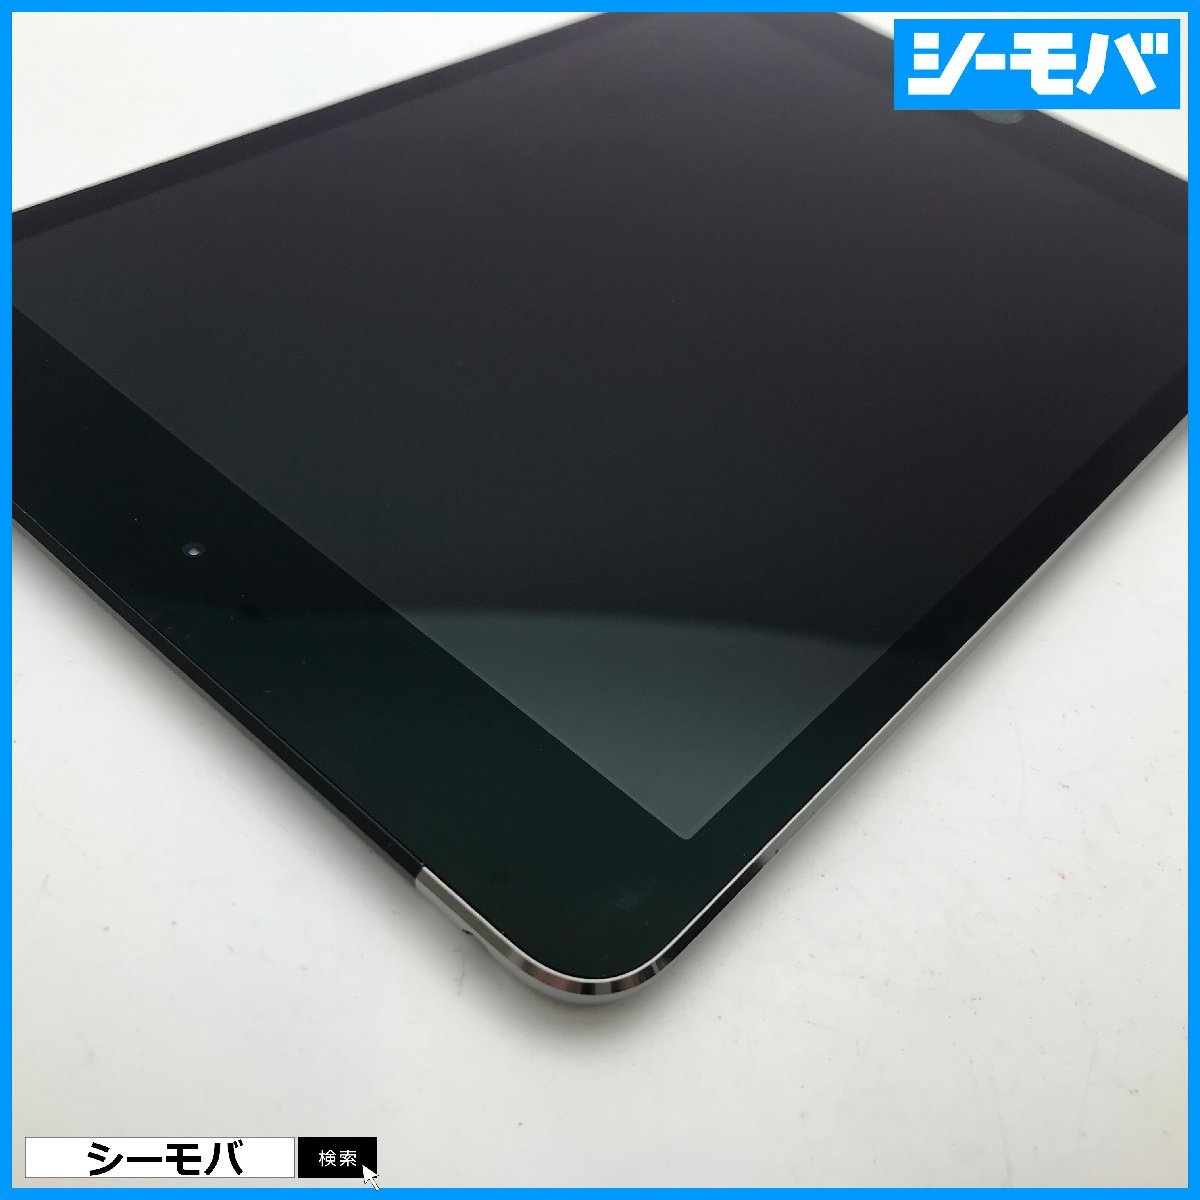 名作 A1550 Cellular Wi-Fi 4 mini iPad au RUUN10941 MK6Y2J/A